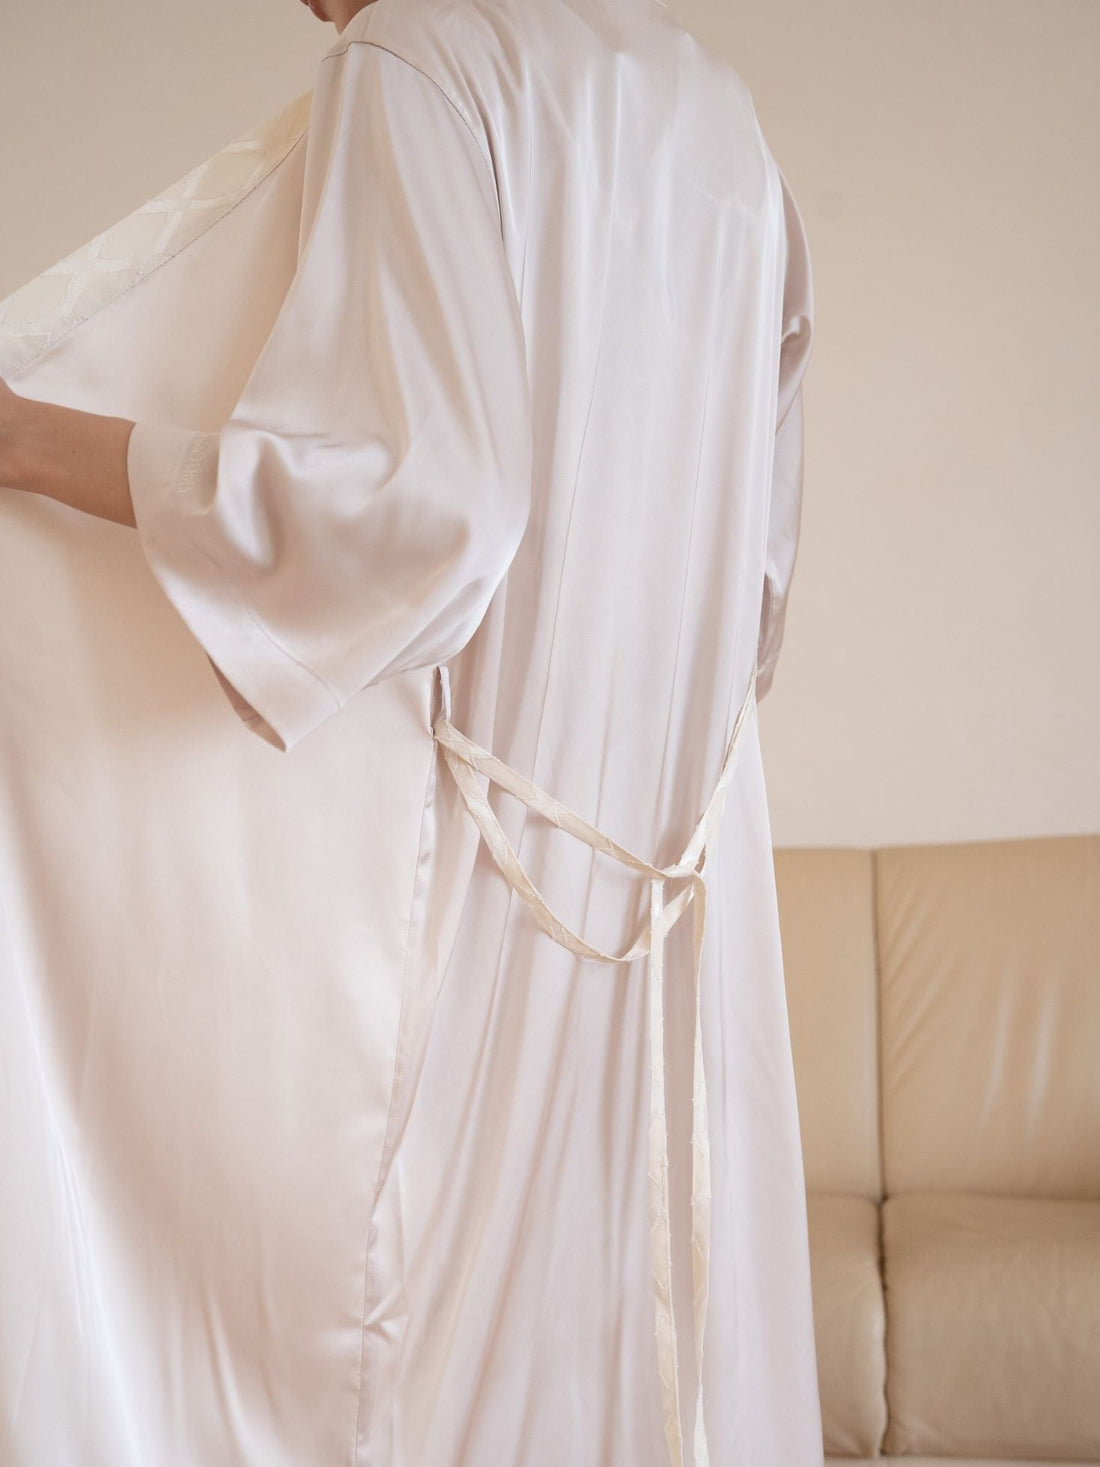 classic georgette satin robe